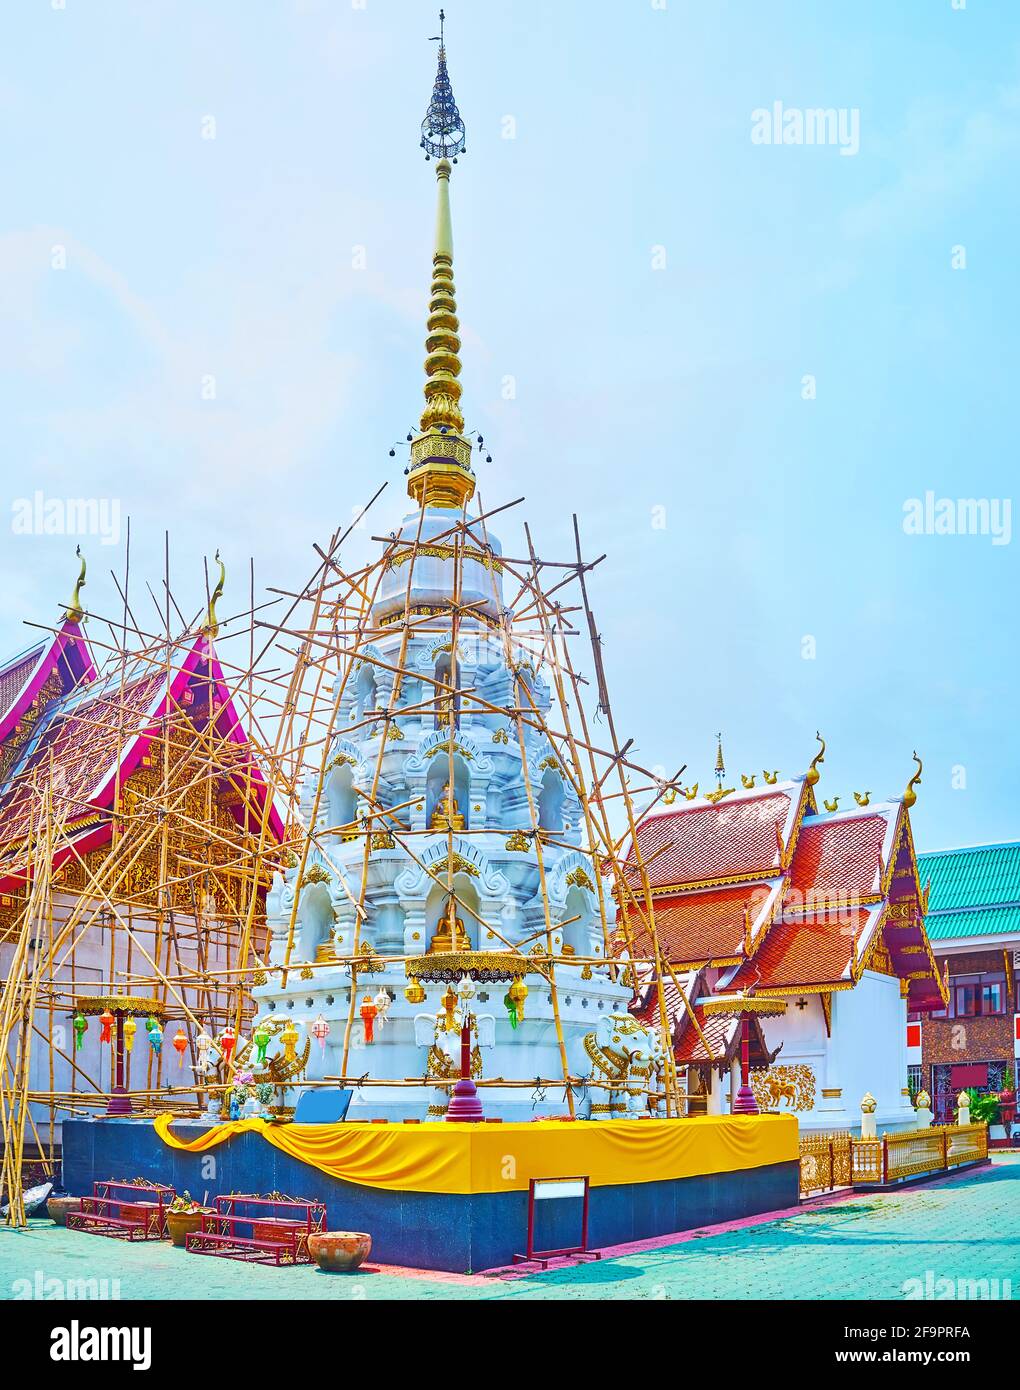 Gli ornati chedi bianchi-dorati di Wat Klang Wiang con stampaggio, immagini di Buddha, guglia alta e ombrello hti, Chiang Rai, Thailandia Foto Stock